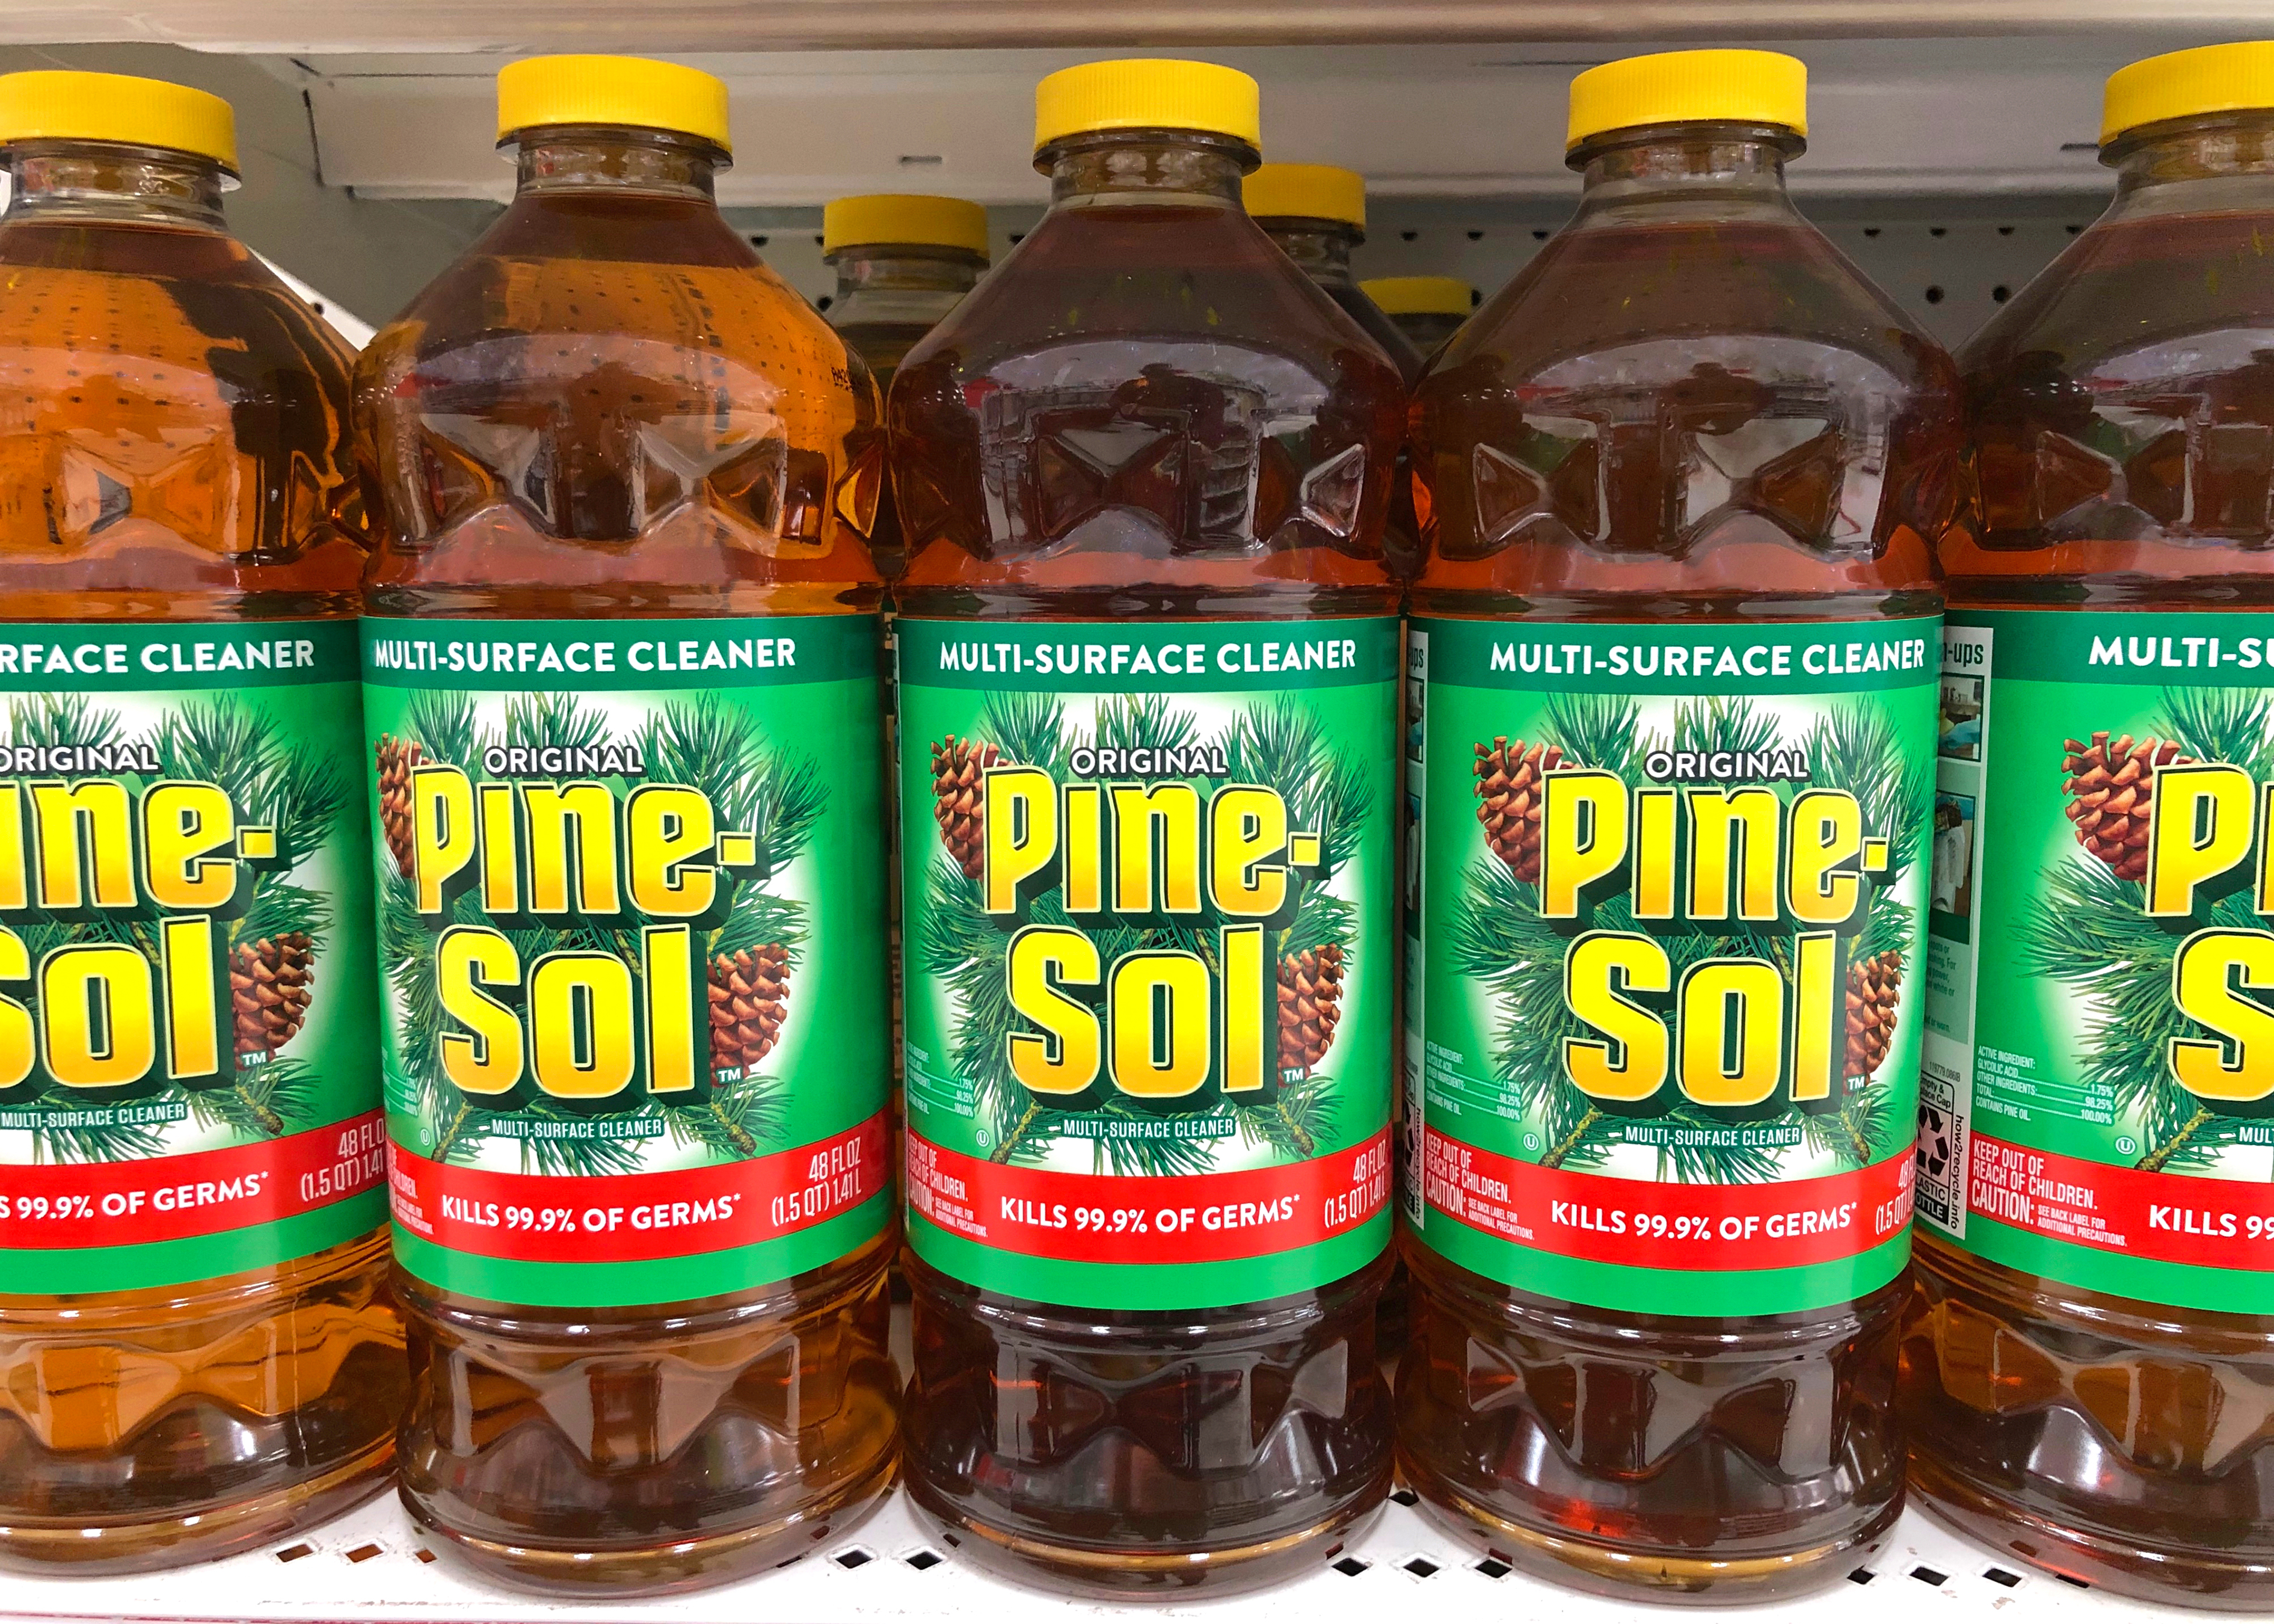 Pine-Sol multi-surface cleaner bottles on store shelves | Source: Shutterstock